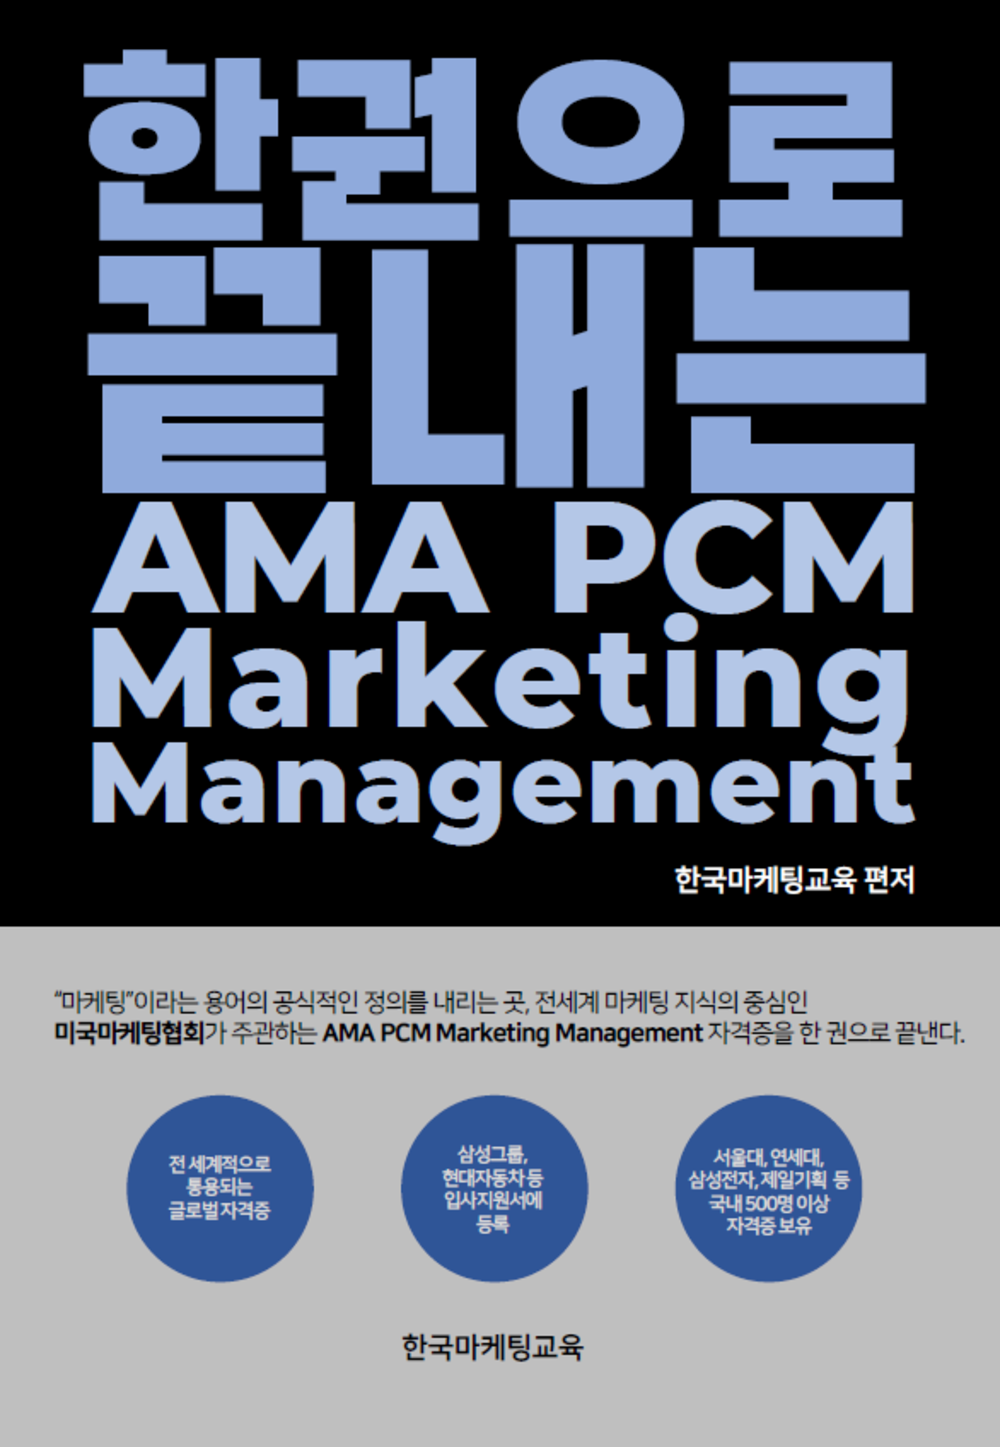 한권으로 끝내는 AMA PCM Marketing Management